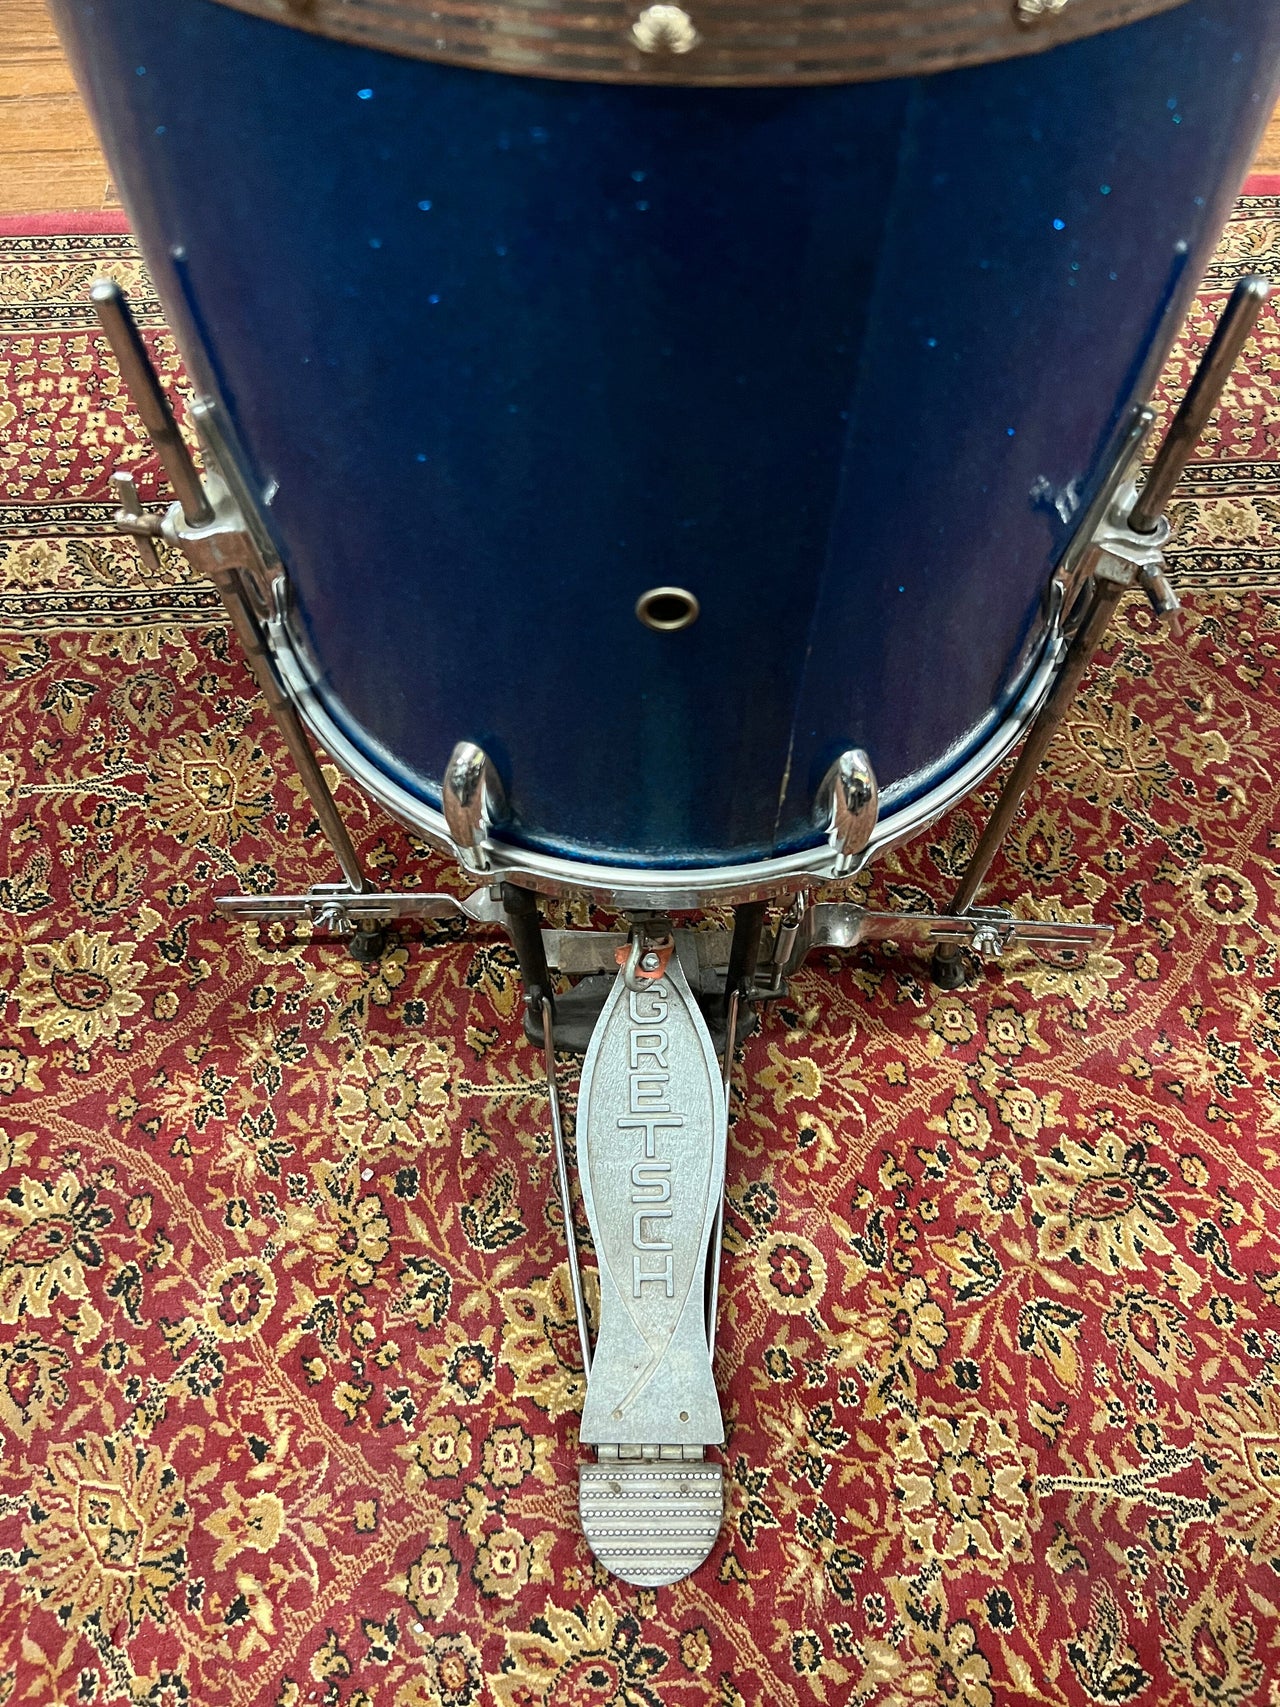 Gretsch Cocktail Drum Set 1960s Blue (PX4183) drum kit Gretsch 